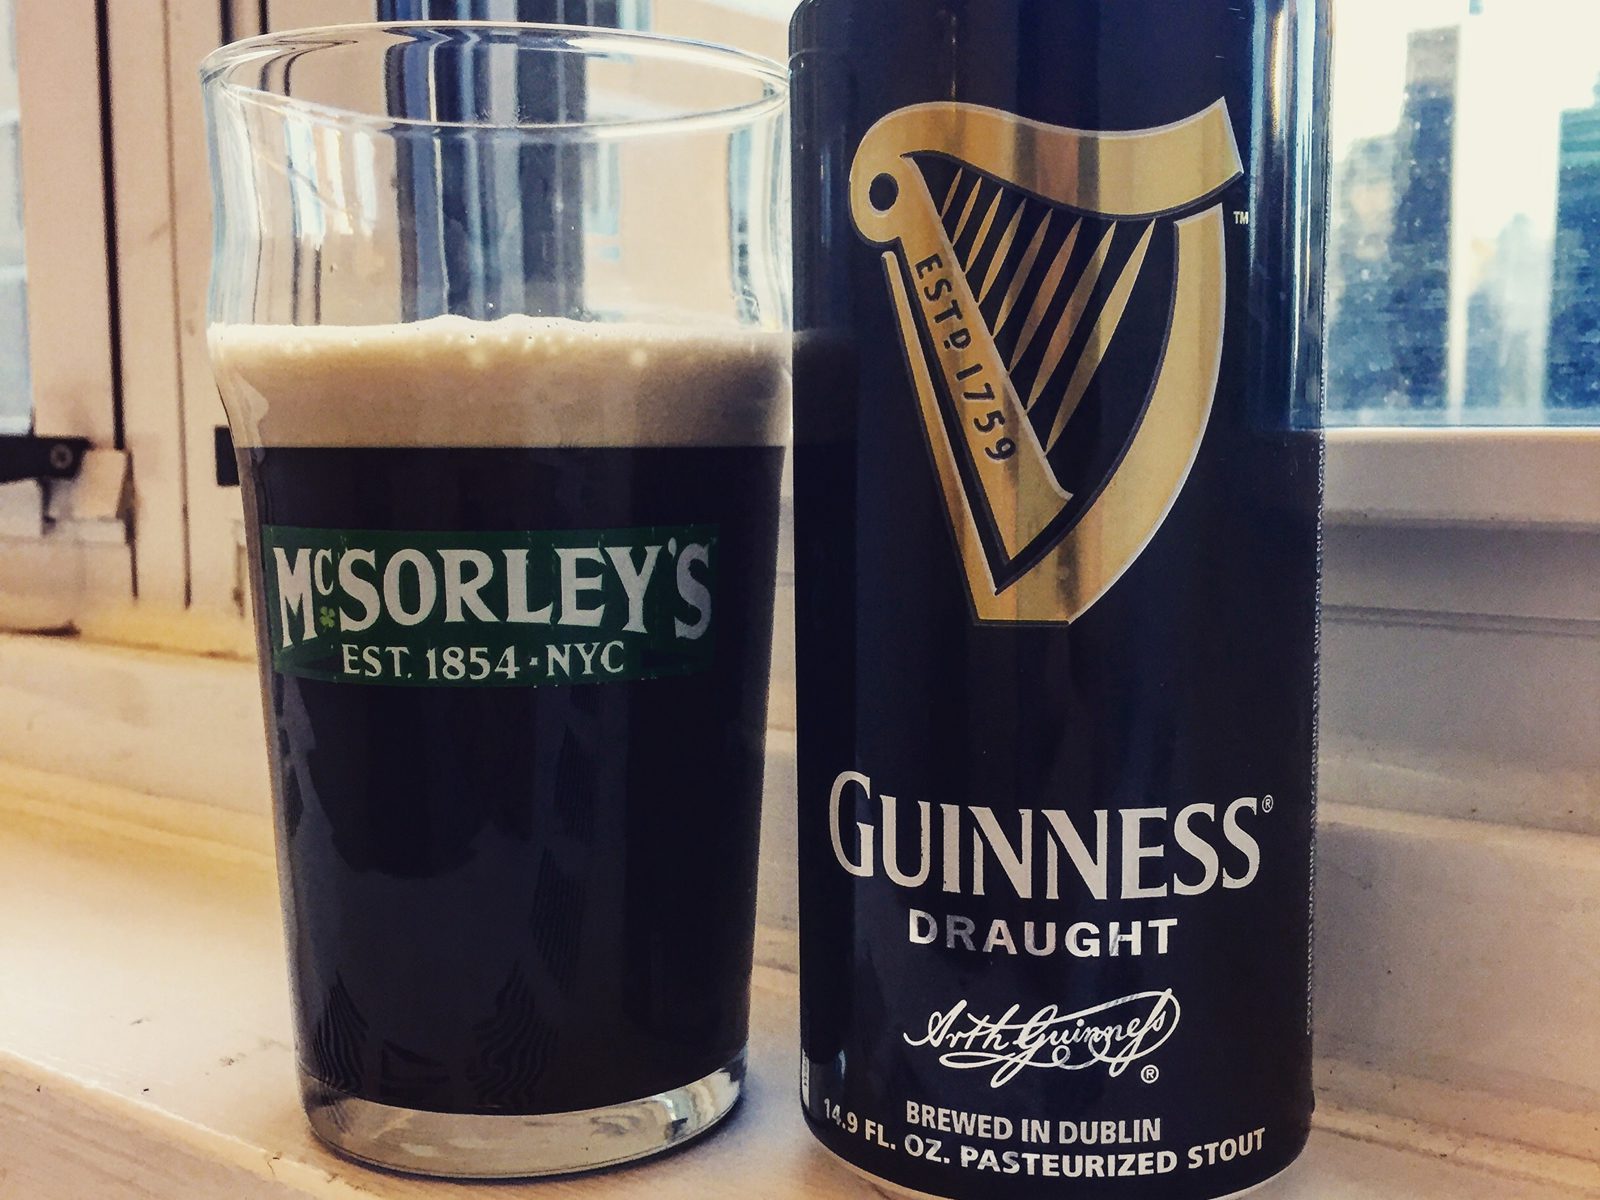 Guinness: Guinness Draught